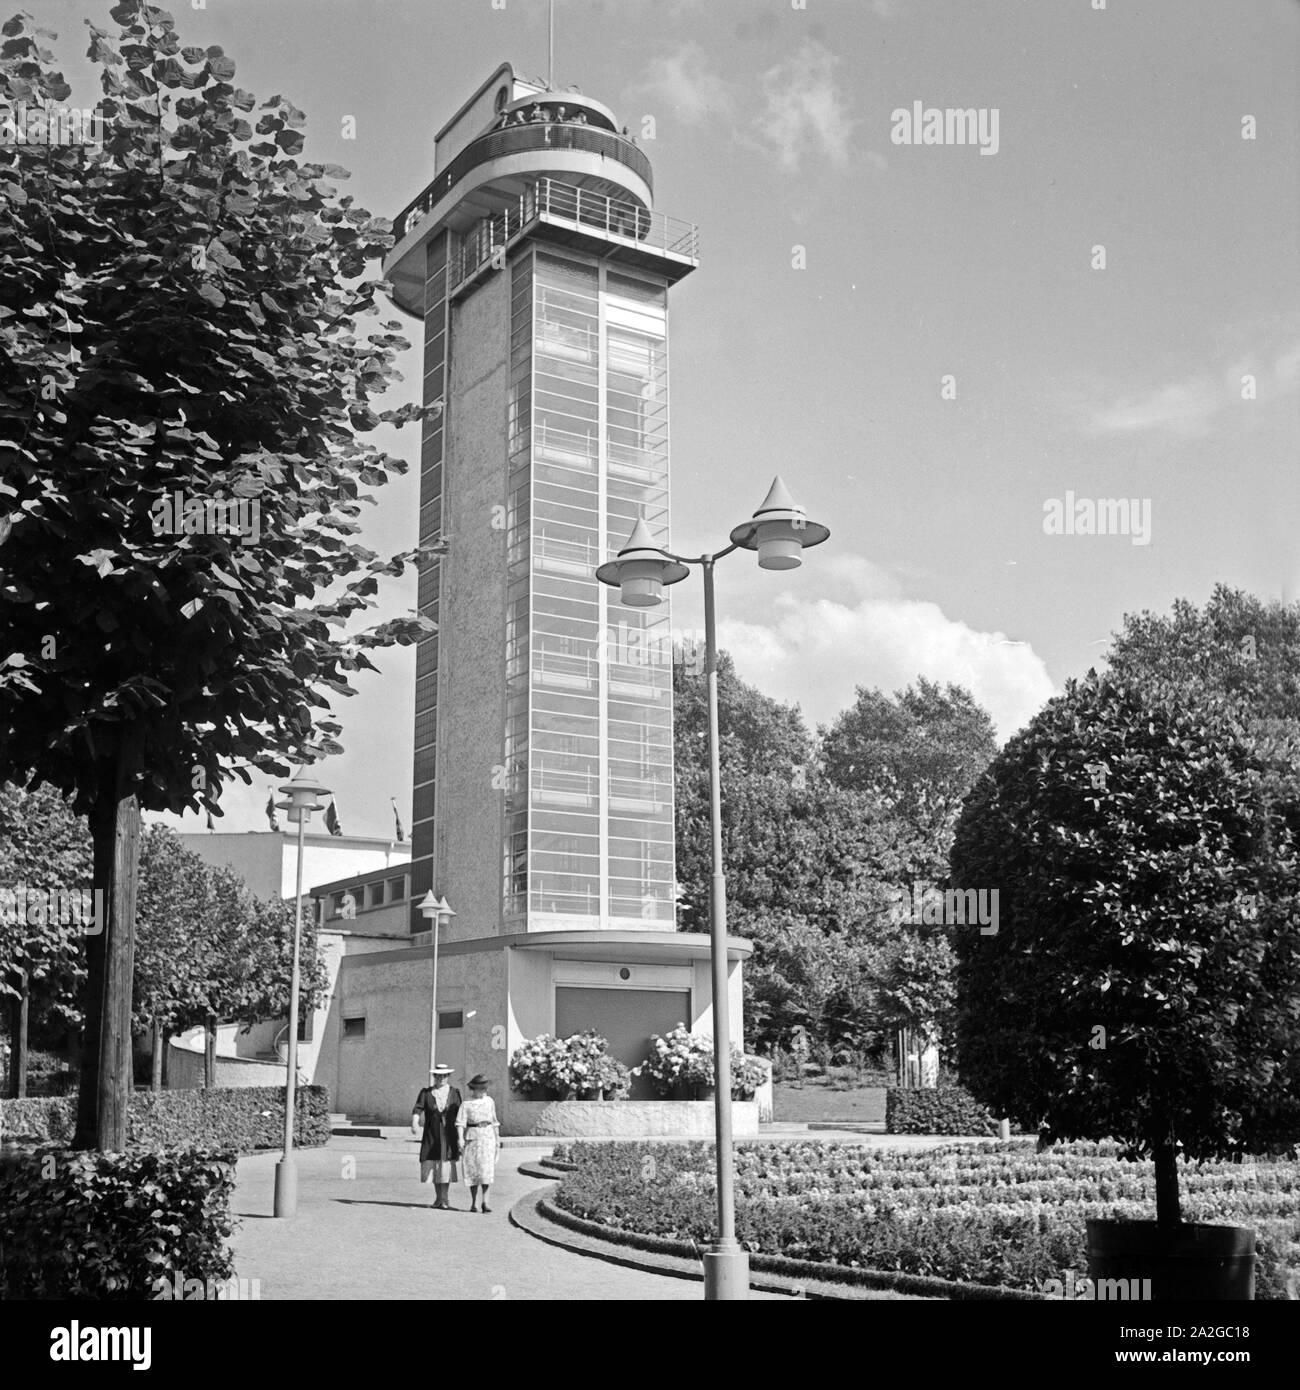 Der Grugaturm im Grugapark in Essen, Deutschland 1930er Jahre. Grugaturm look-out at Grugapark gardens in the city of Essen, Germany, 1930s. Stock Photo